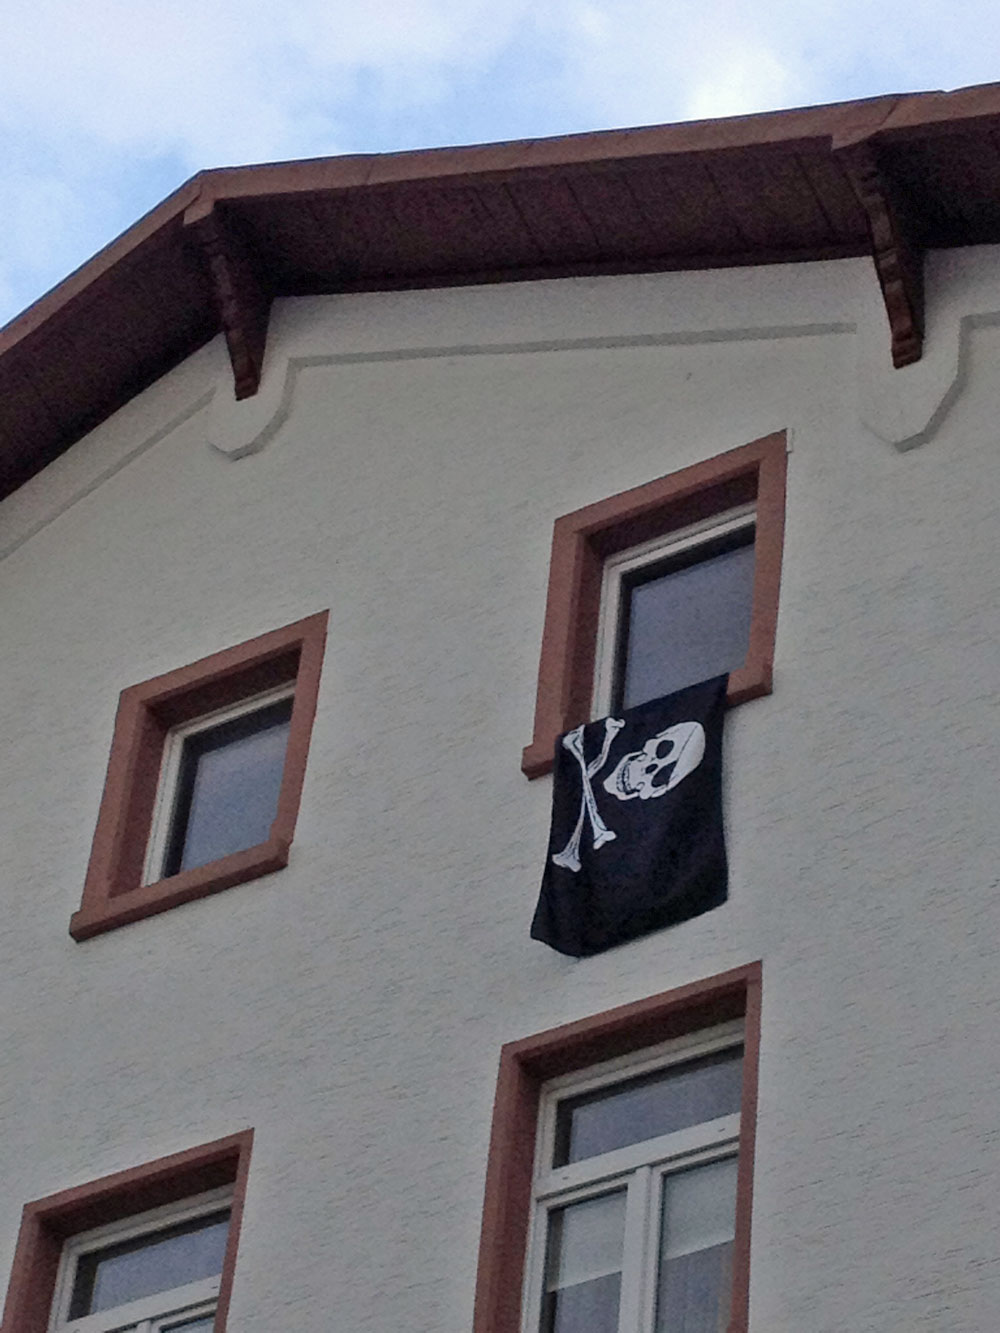 flaggen-am-fenster-in-frankfurt-zur-euro-2016-piraten